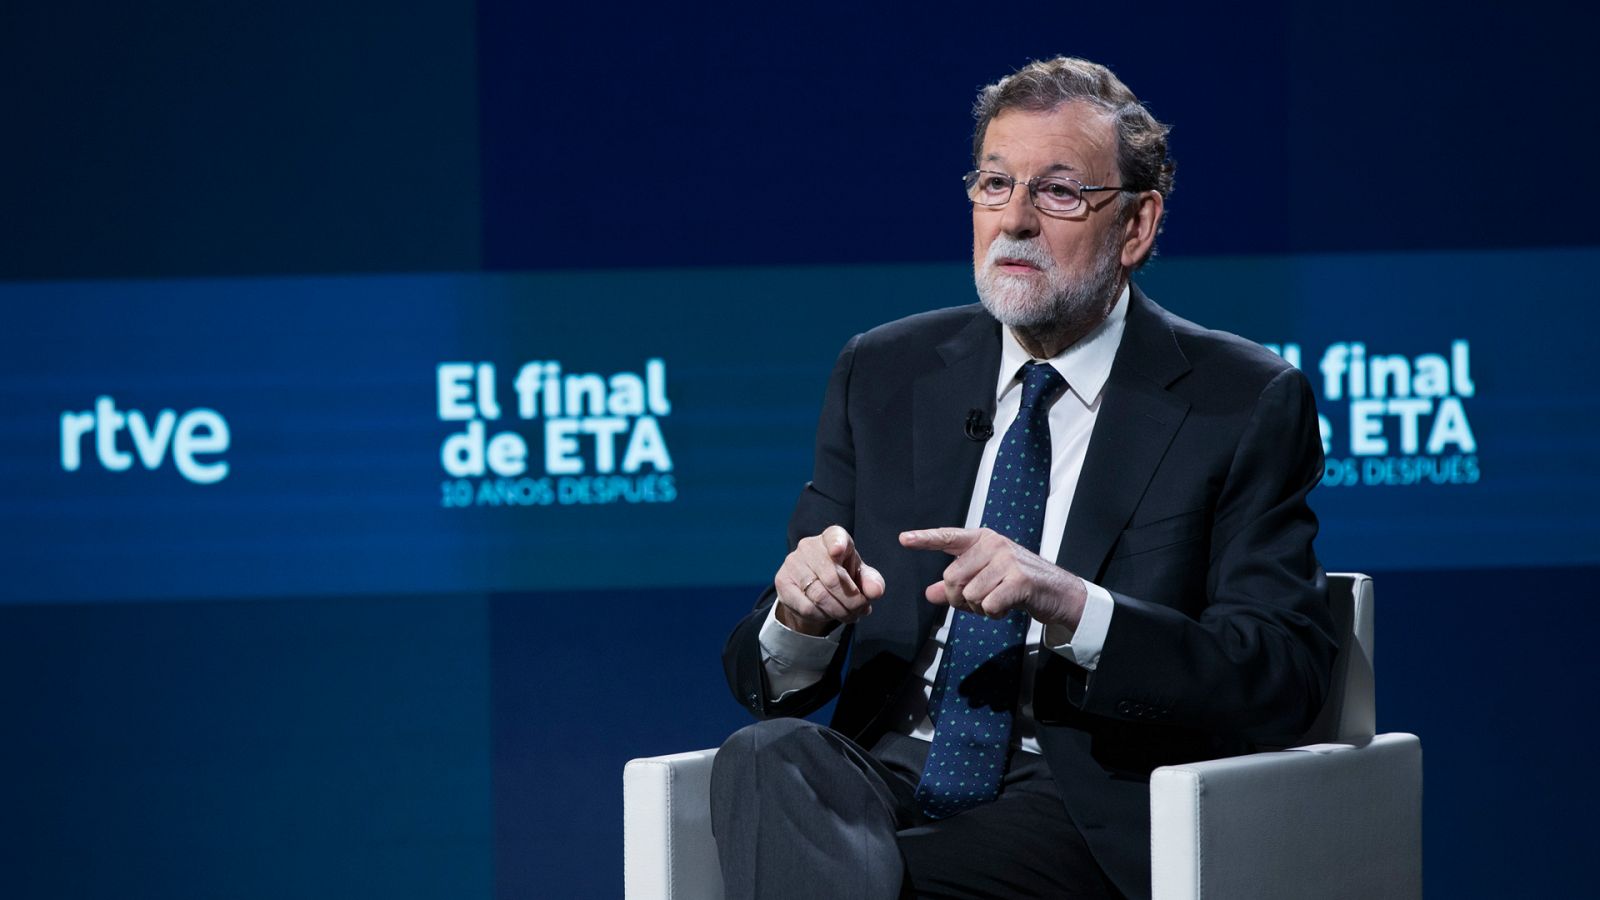 Especial informativo - El final de ETA. 10 años después. Entrevista a Mariano Rajoy